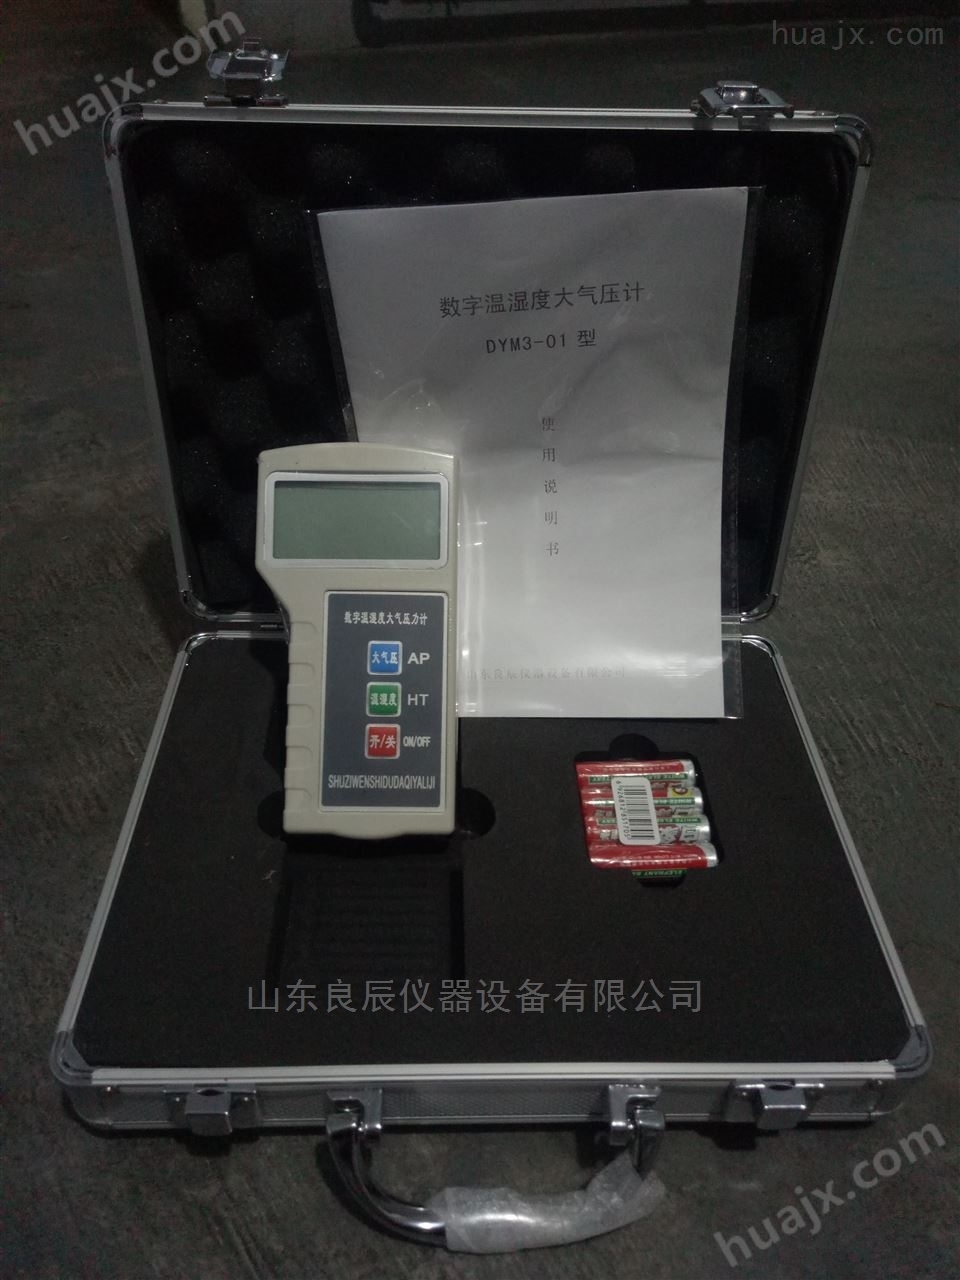 LCP-01数字式大气压表